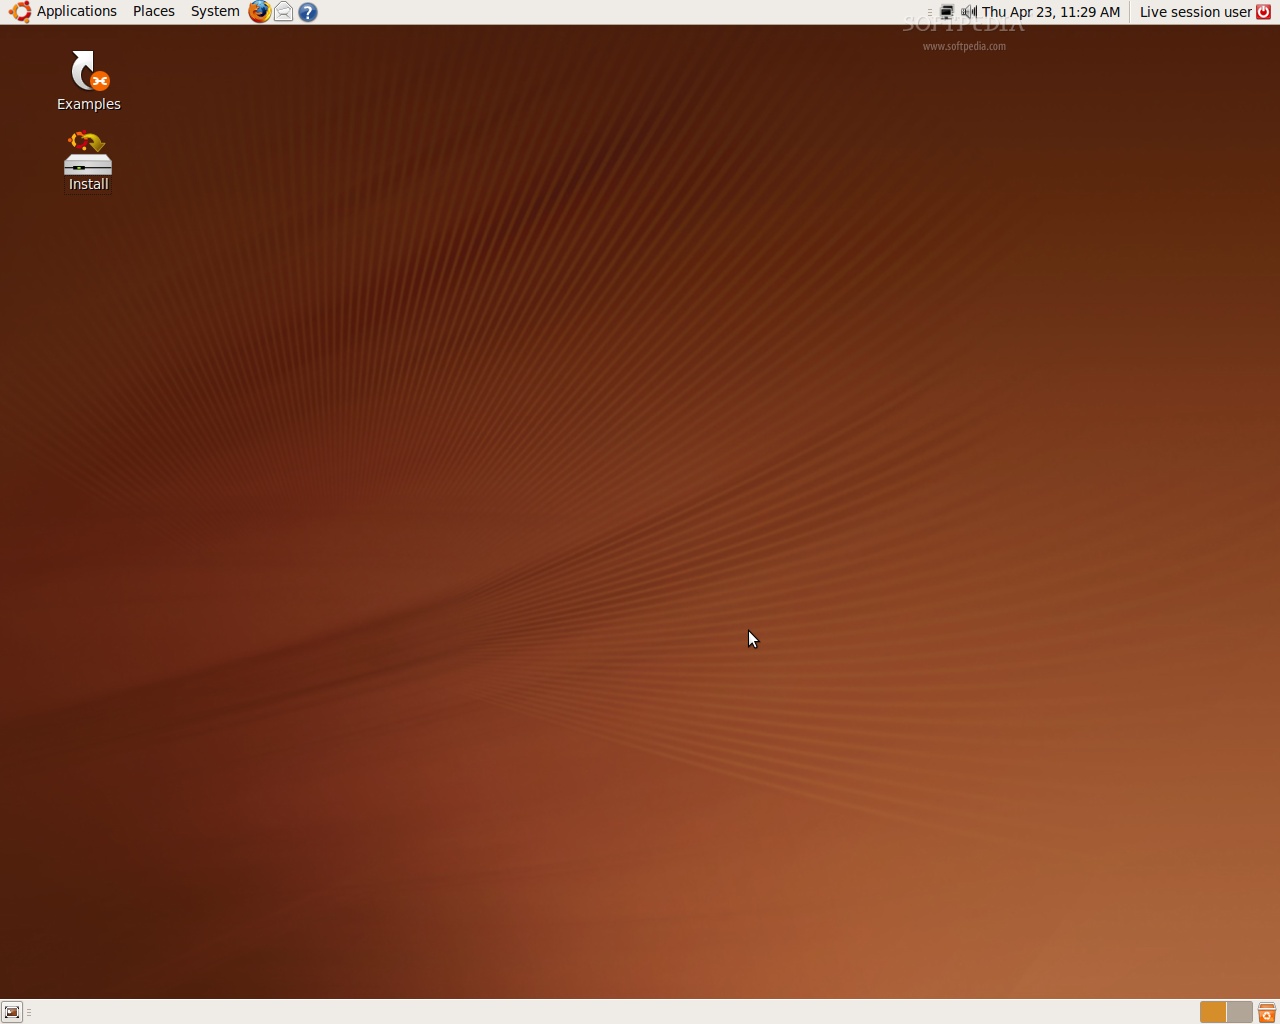 ubuntu 9.04 jaunty jackalope